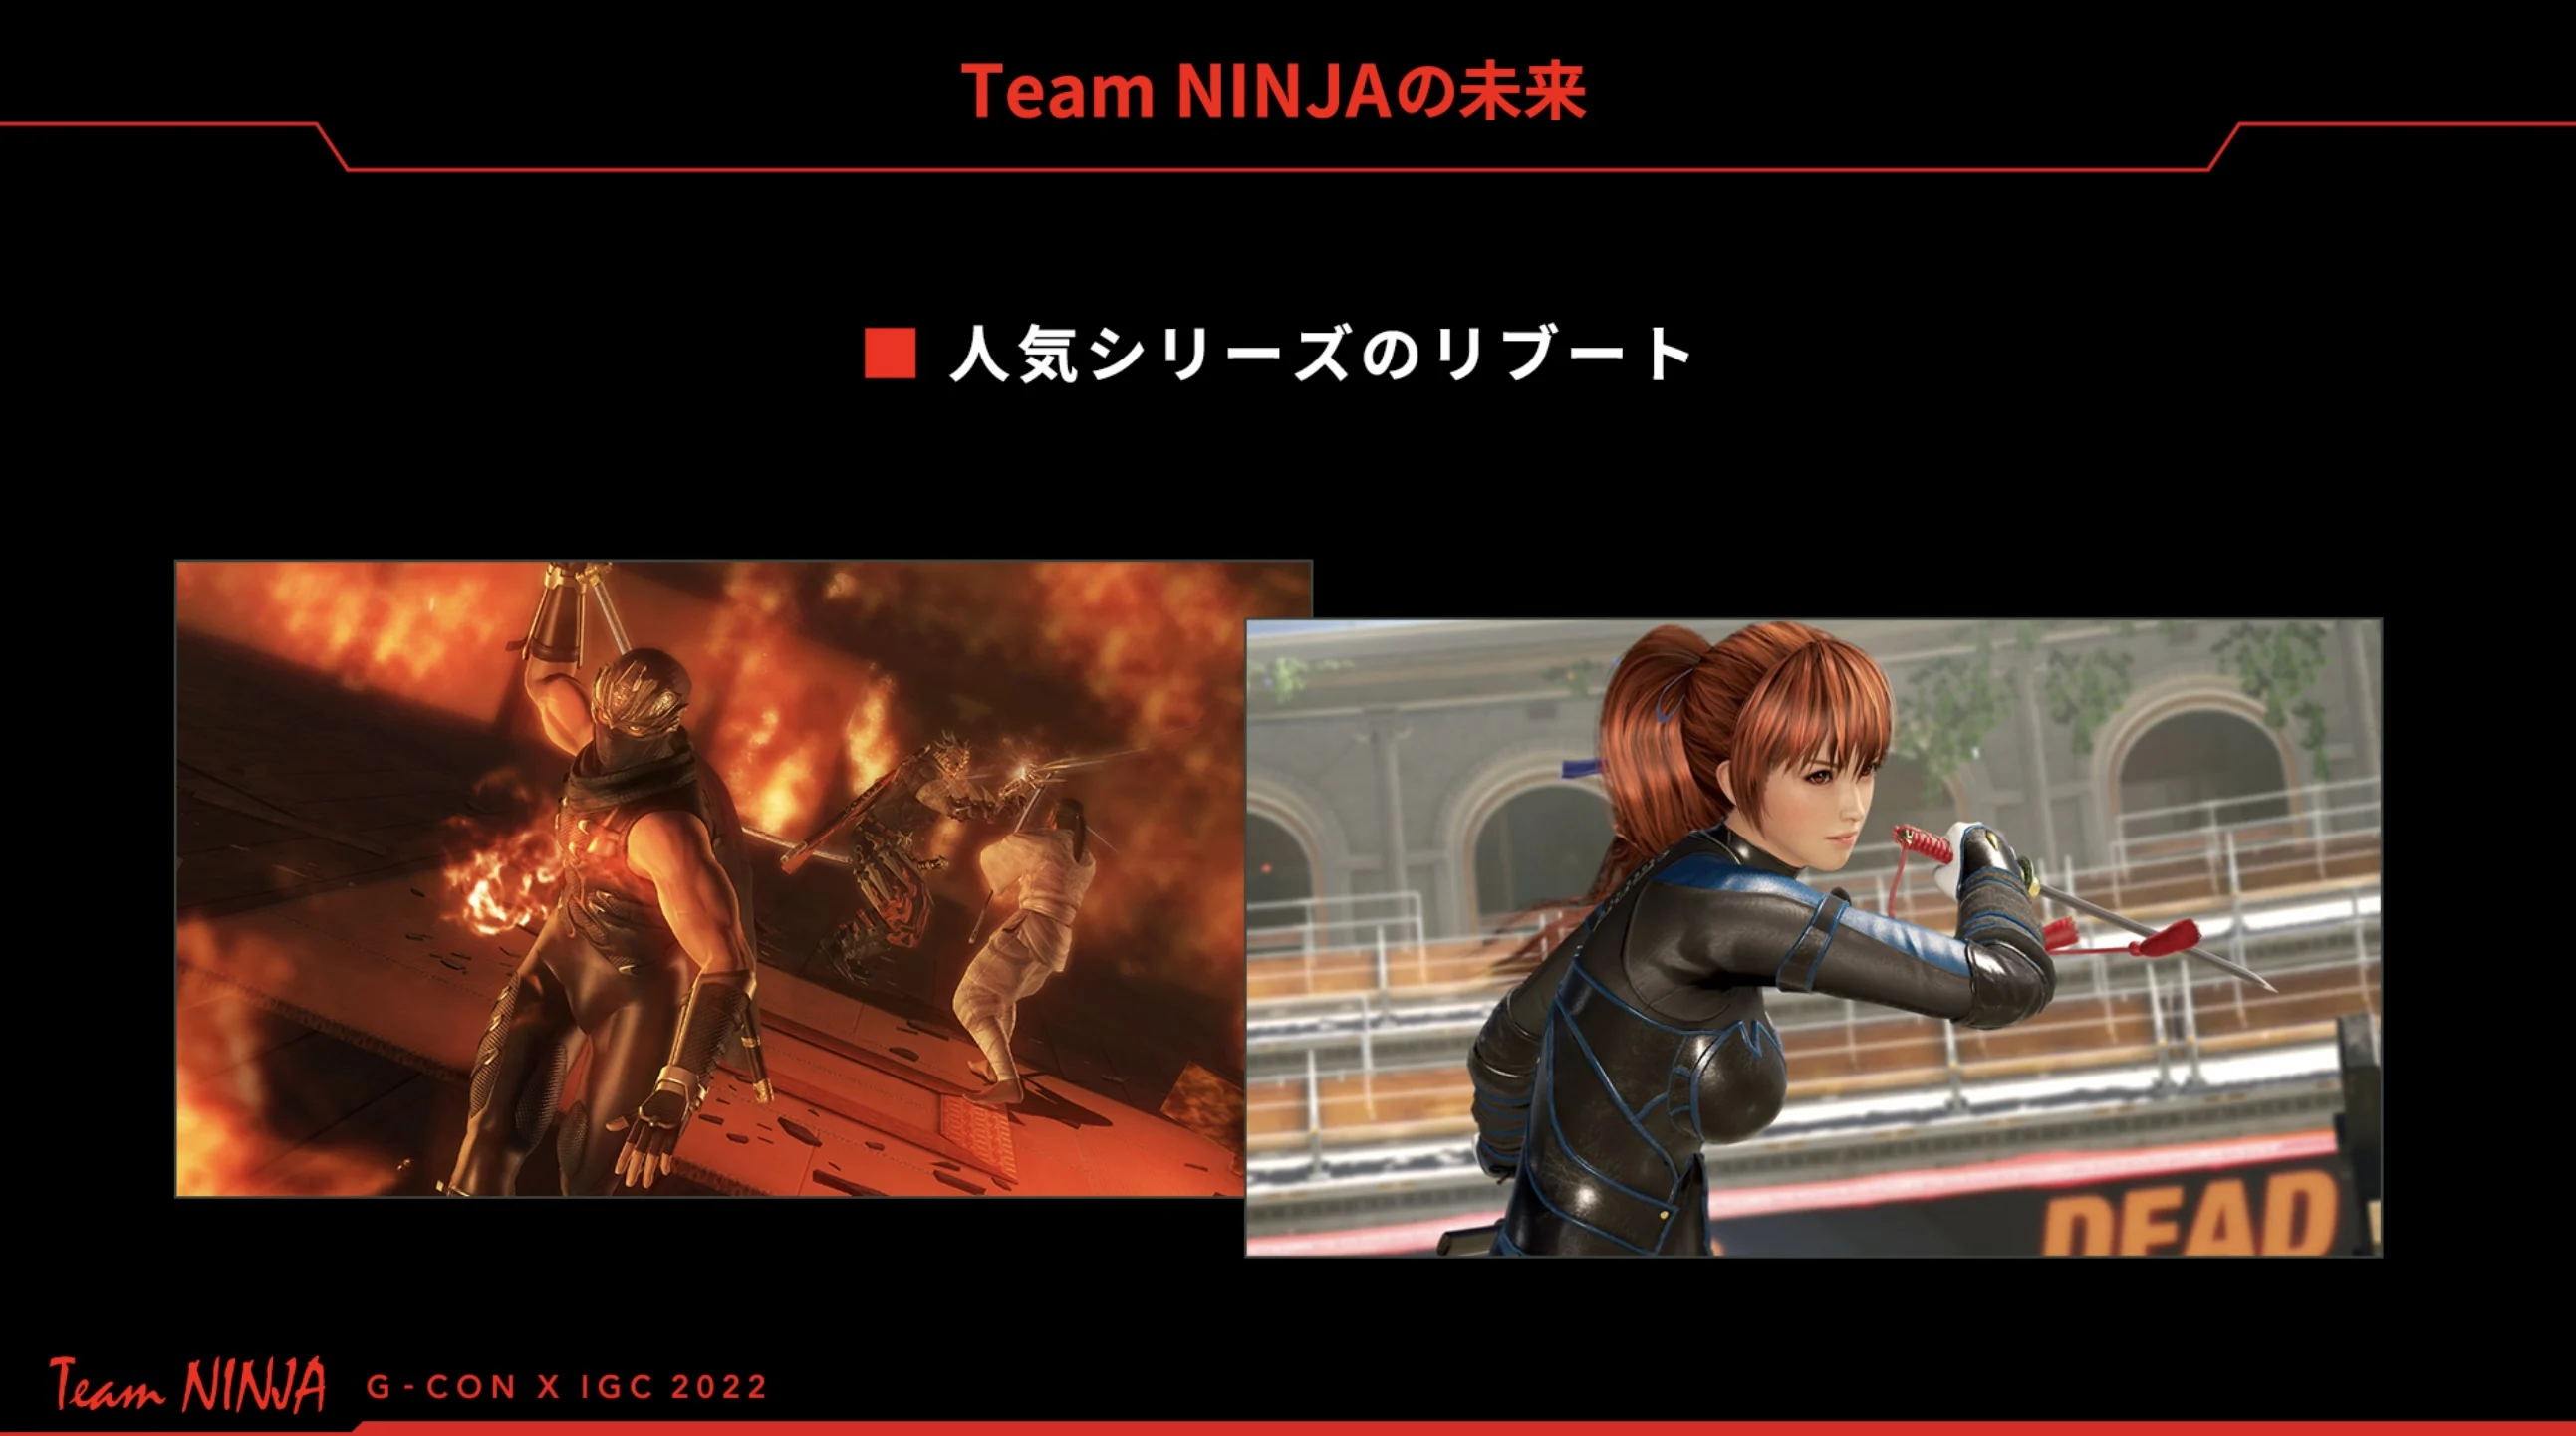 Team ninja 2